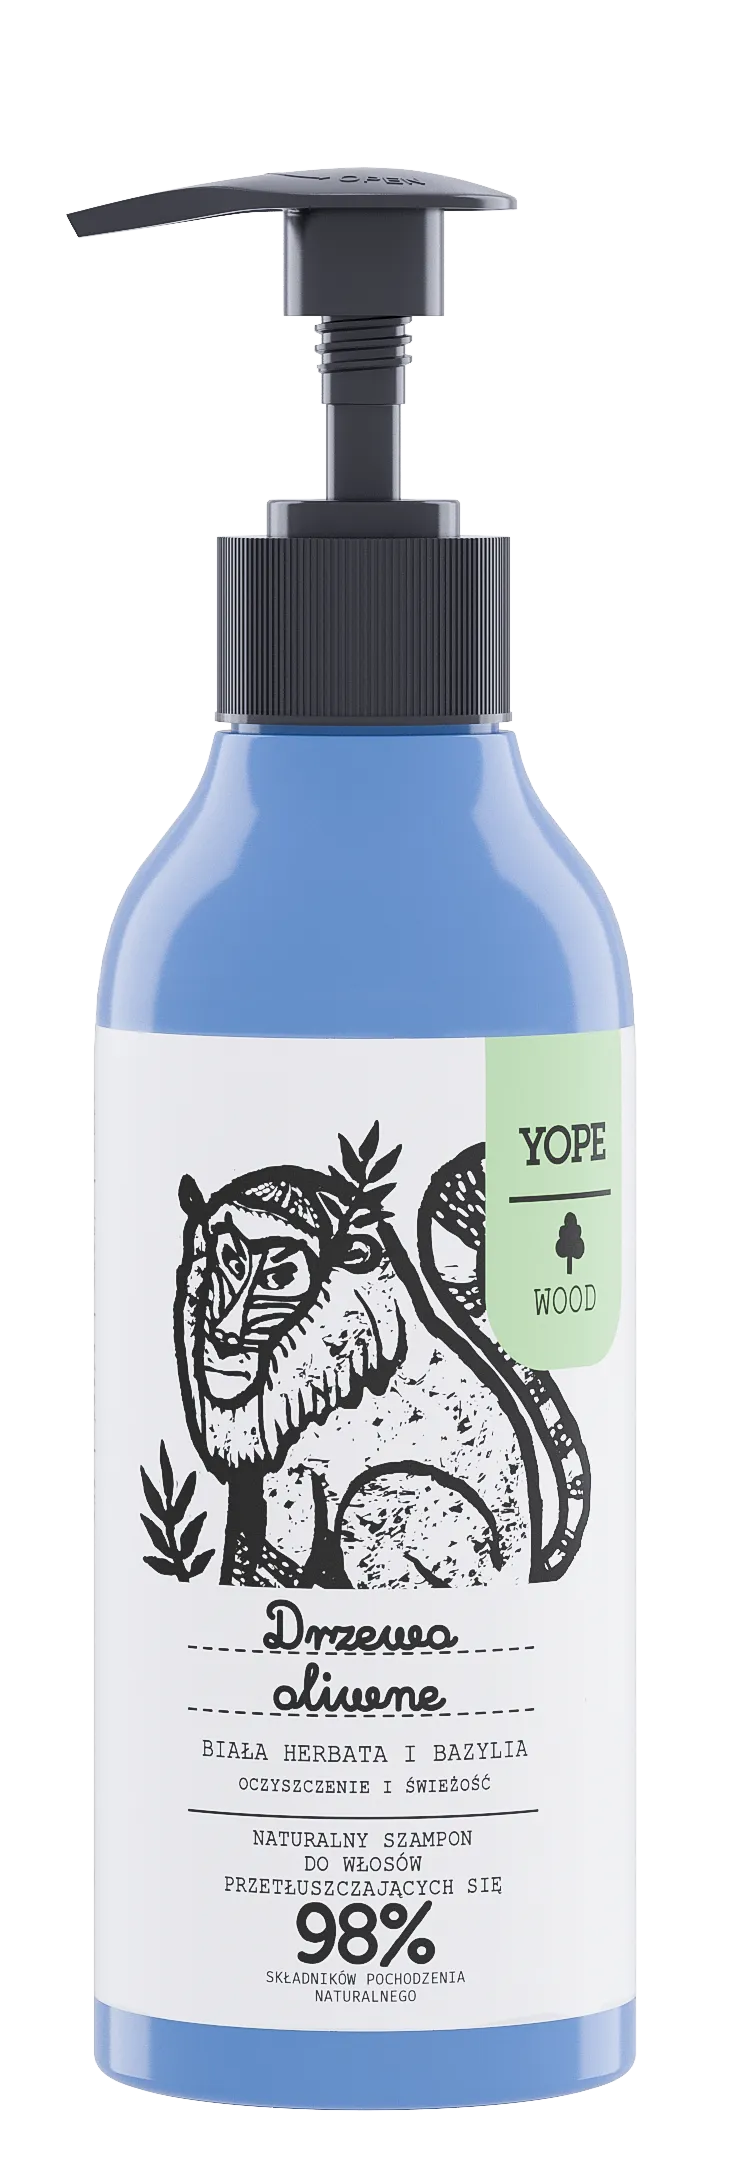 YOPE Wood szampon do włosów przetłuszczających się Drzewo Oliwne, Biała Herbata, Bazylia, 300 ml